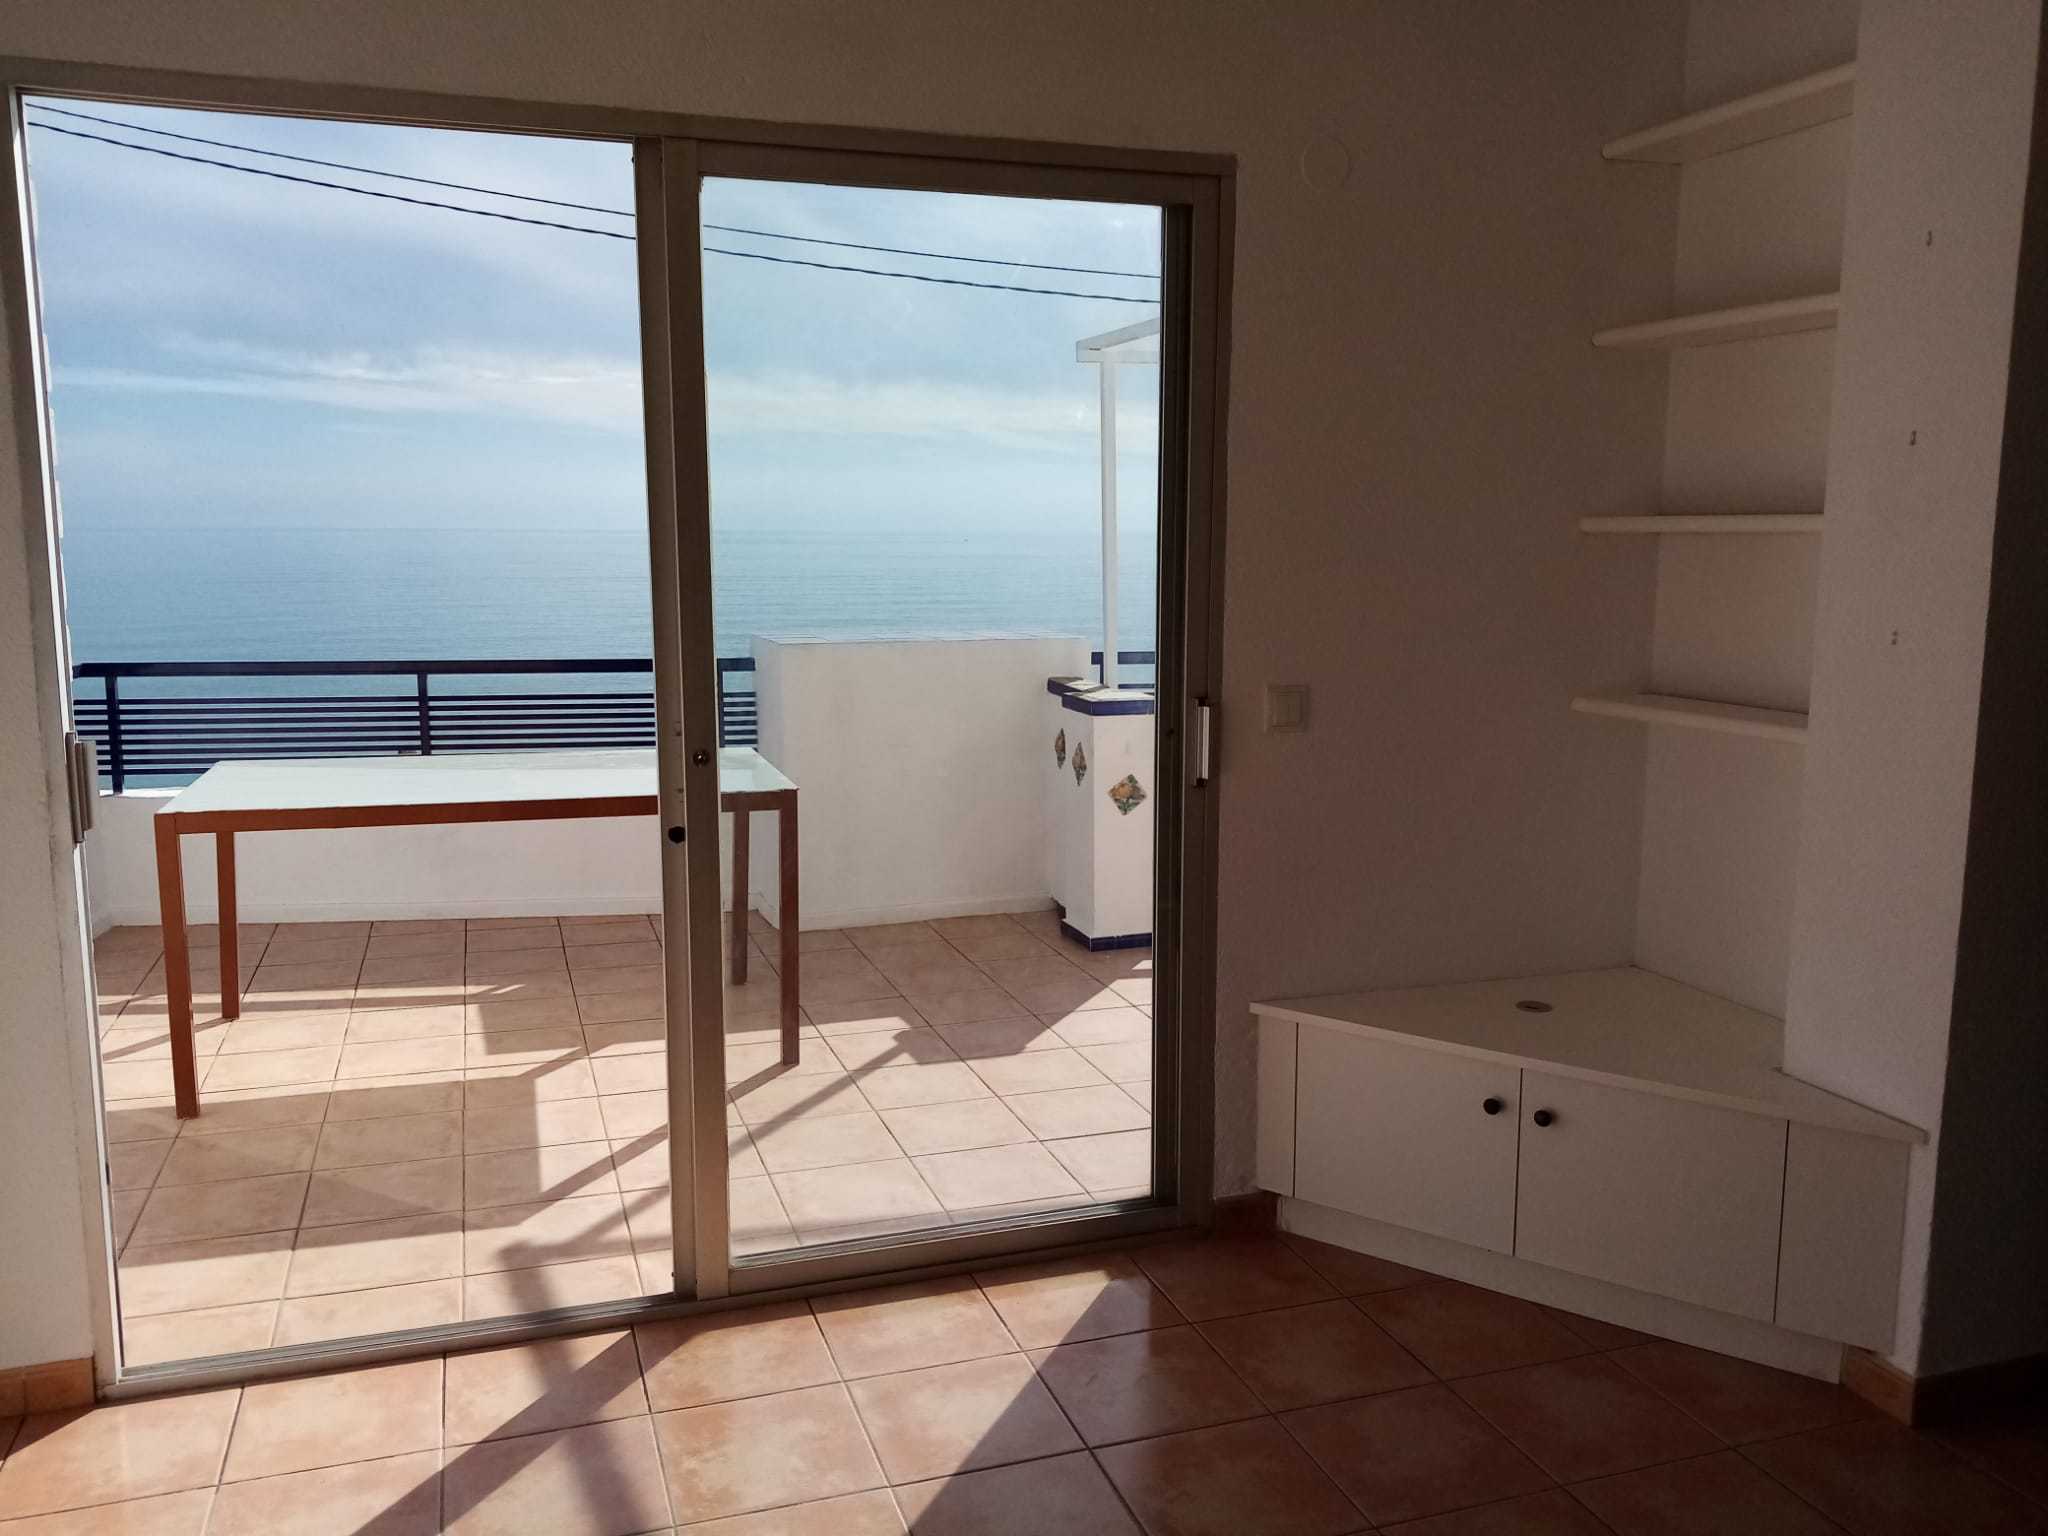 Penthouse overlooking the Mediterranean in Altea